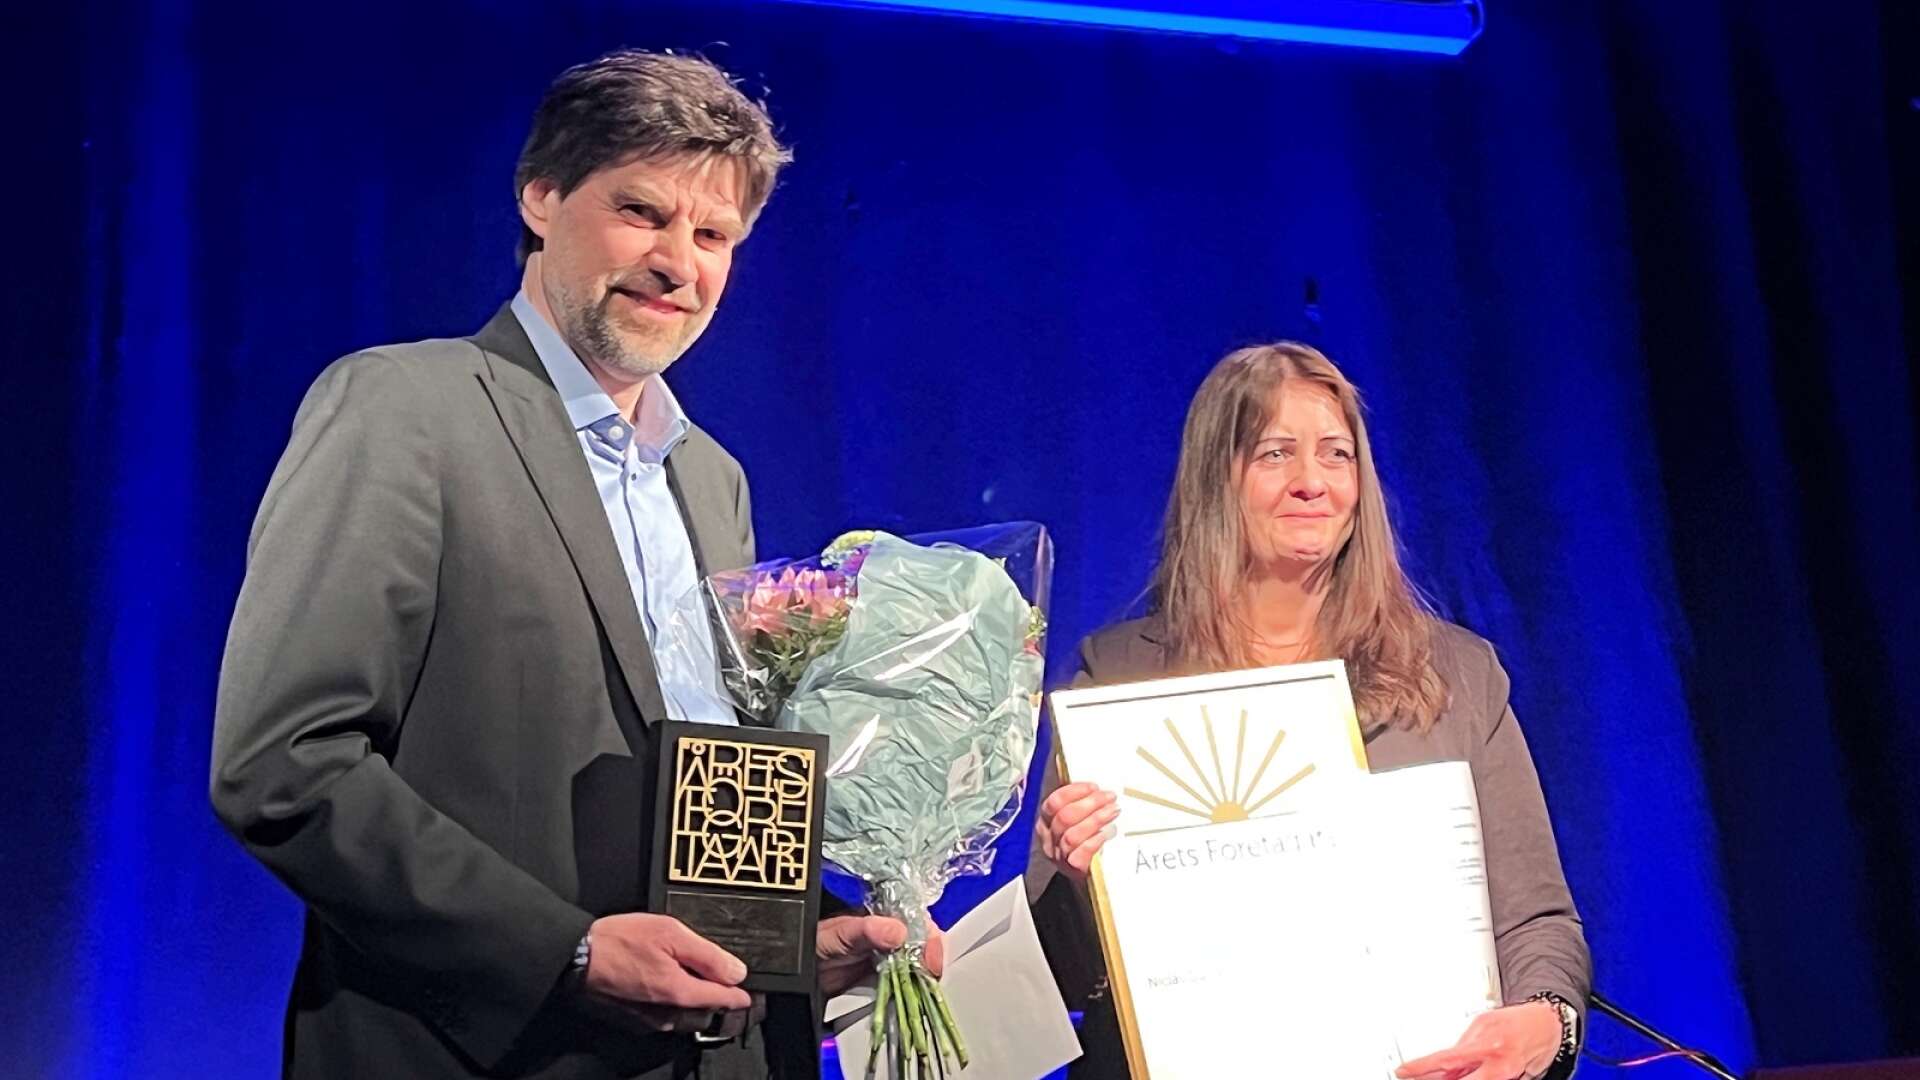 Niclas Gustafsson och Susanne Andersson från Electec Systems tog emot priset som Årets företagare för andra gången. Förra gången var för exakt 20 år sedan och sedan dess har företaget växt med 40 anställda.